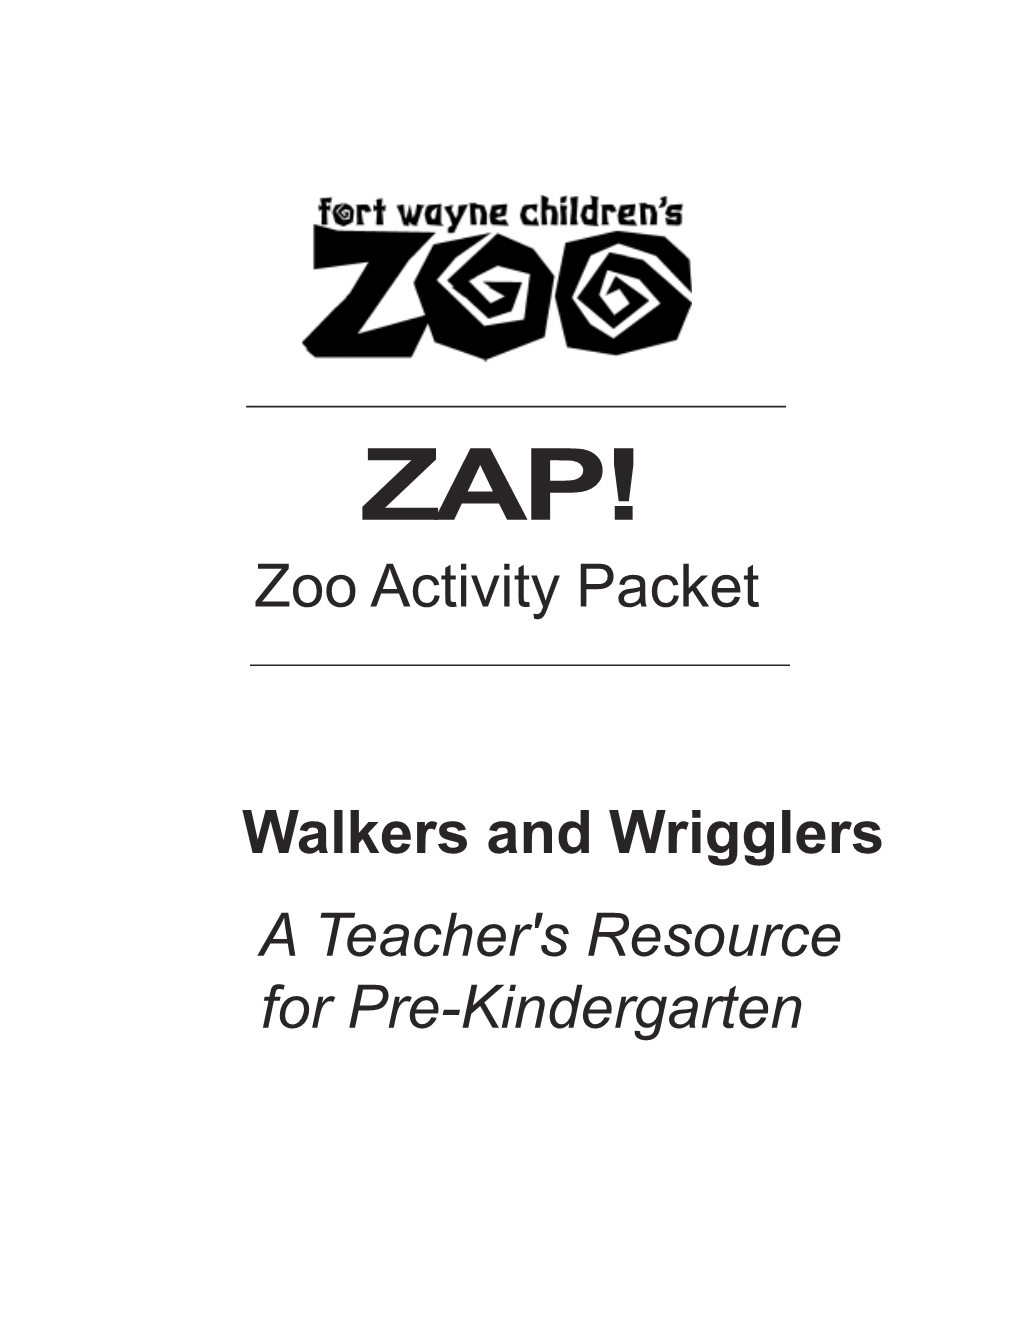 Zoo Activity Packet a Teacher's Resource for Pre-Kindergarten